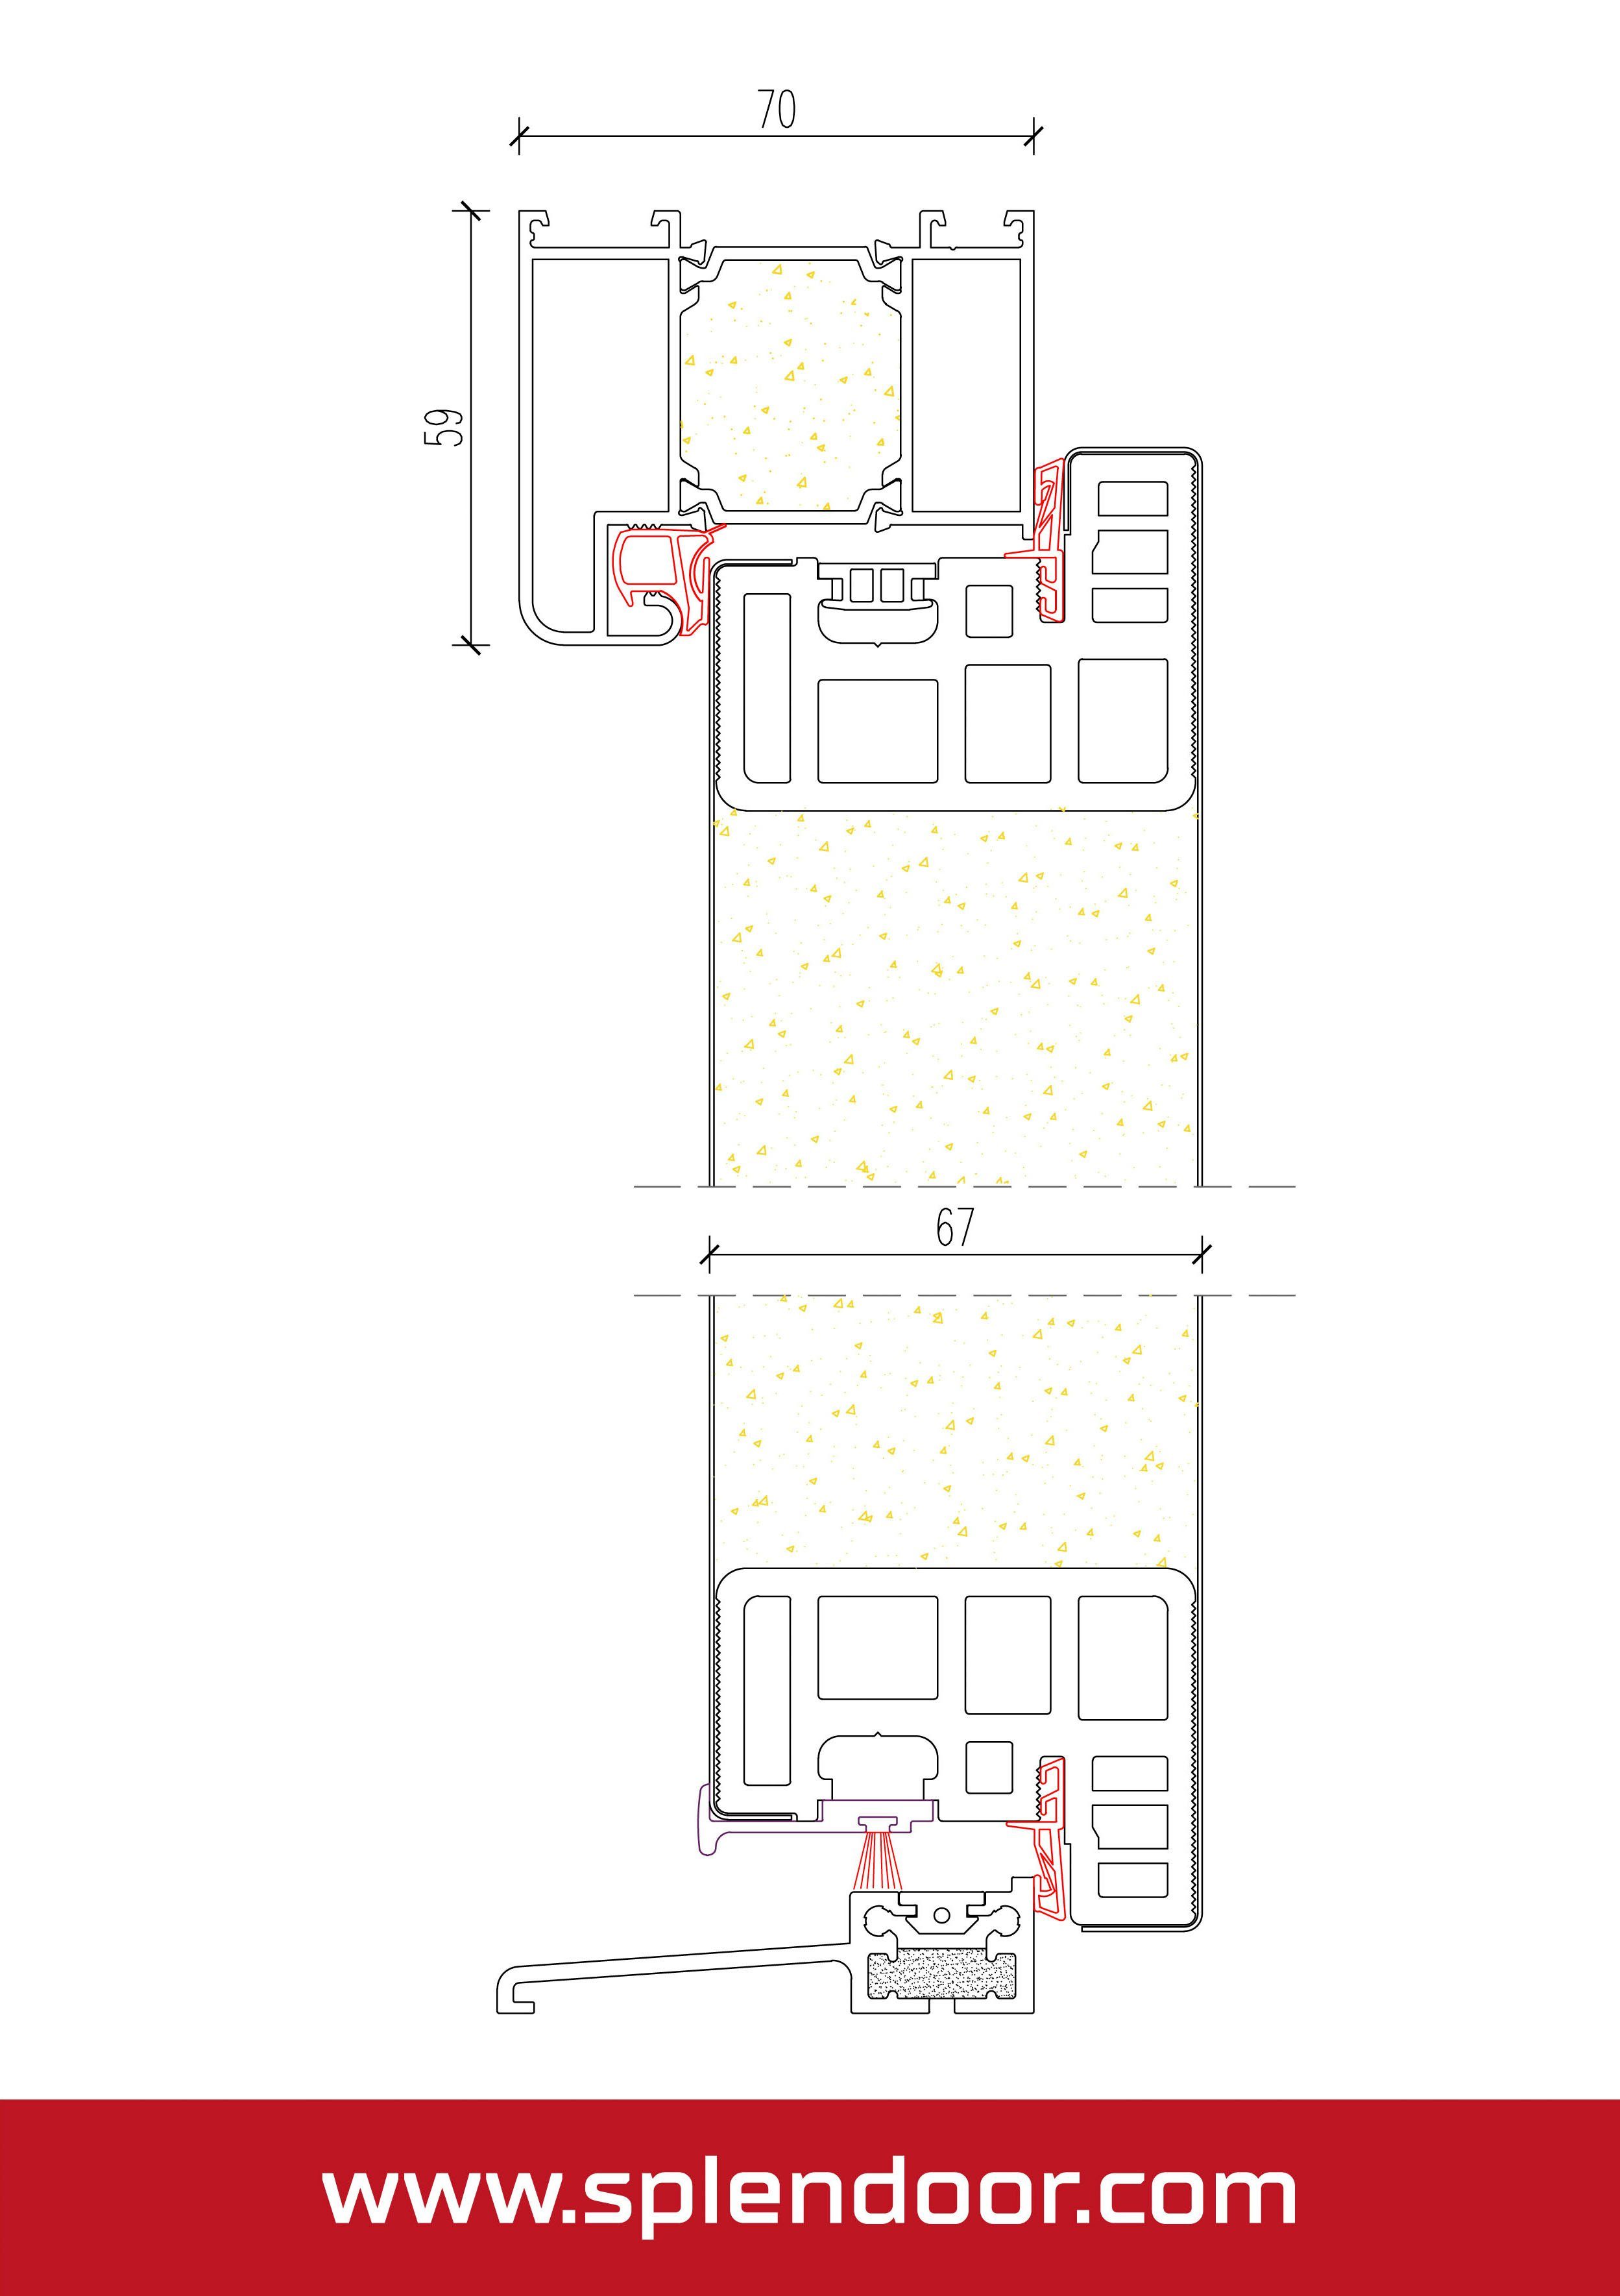 PULA SplenDoor wärmegedämmt gut mit Prime Verglasung, sehr Stabil, Haustür 3-fach nussbaum mit Türrahmen (Set), und